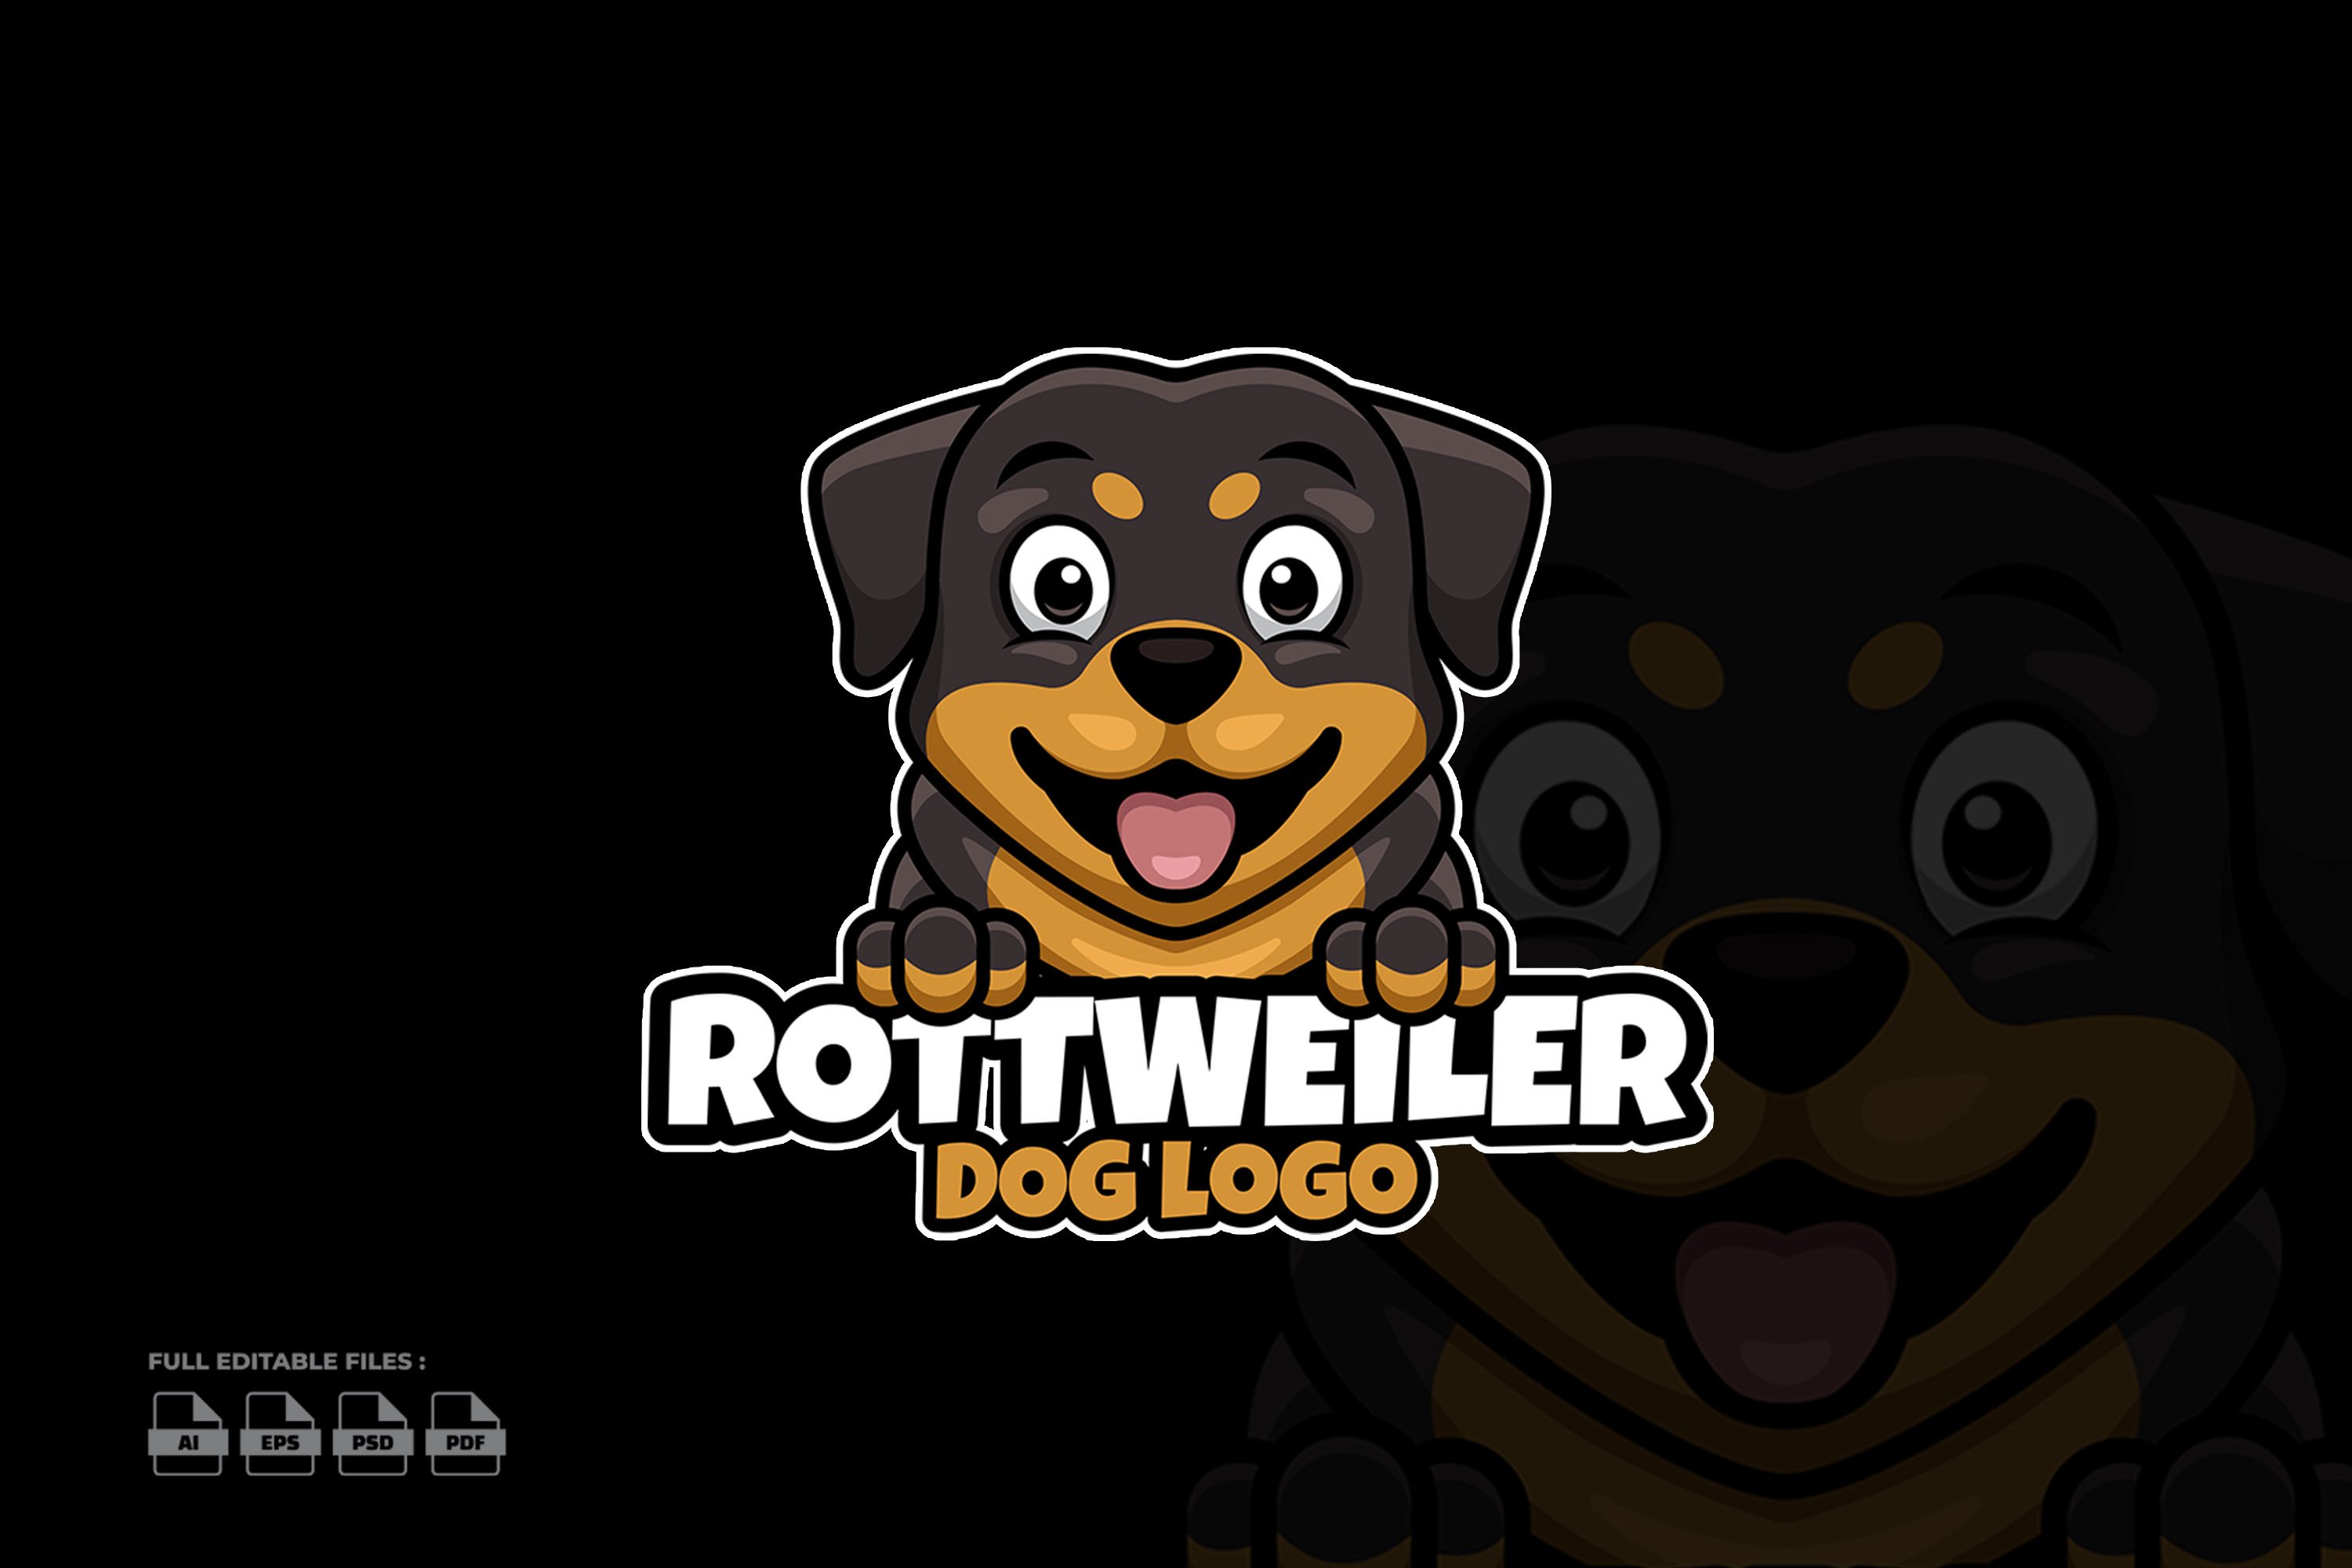 Rottweiler Pets Cartoon Logo cover image.